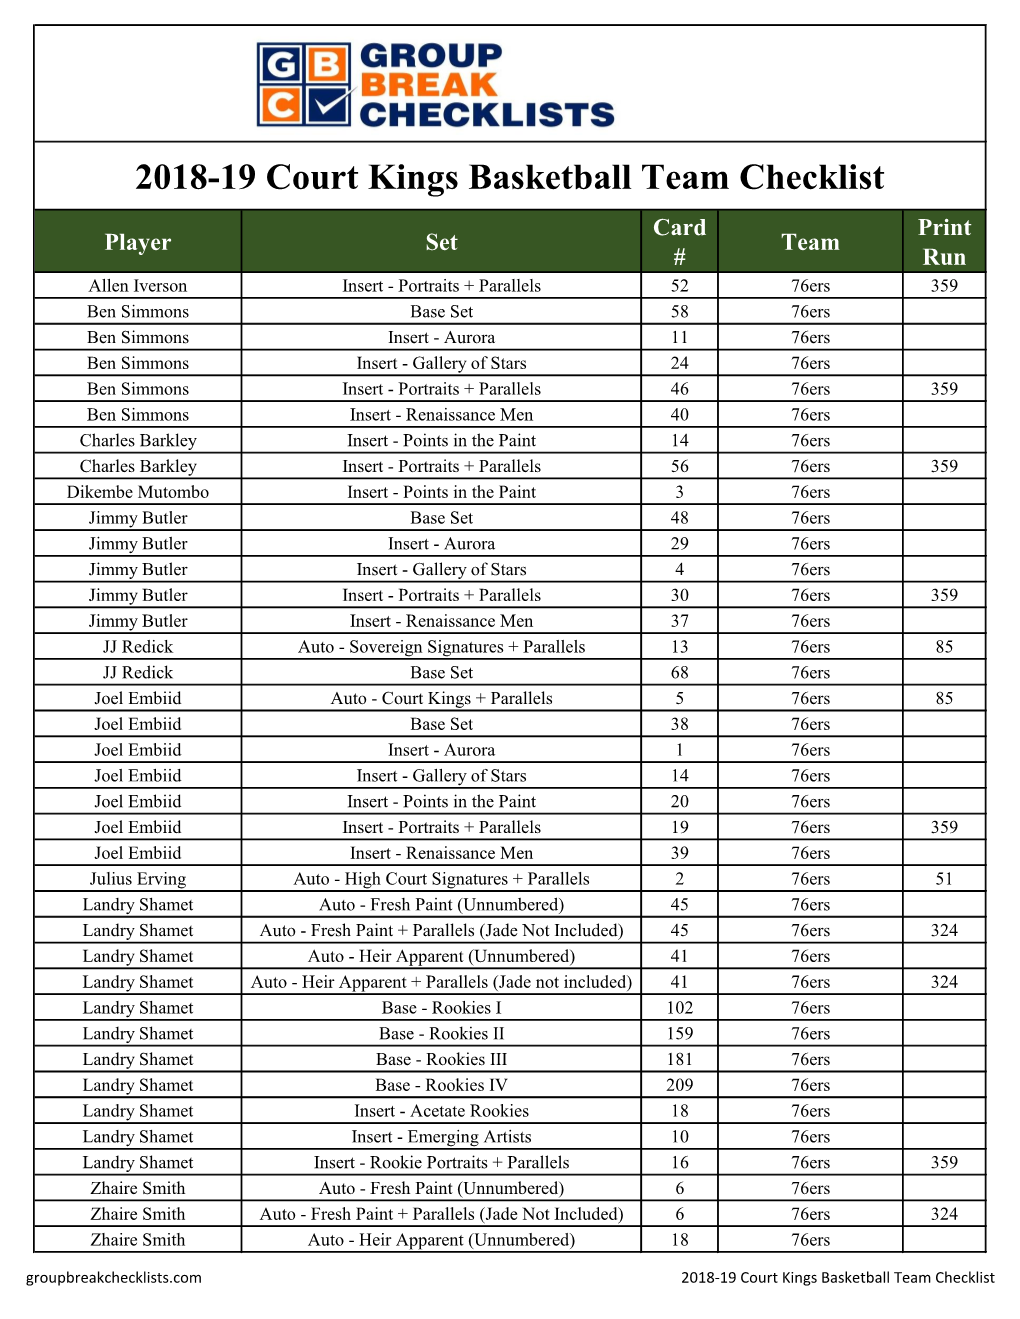 2018-19 Panini Court Kings Basketball Checklist